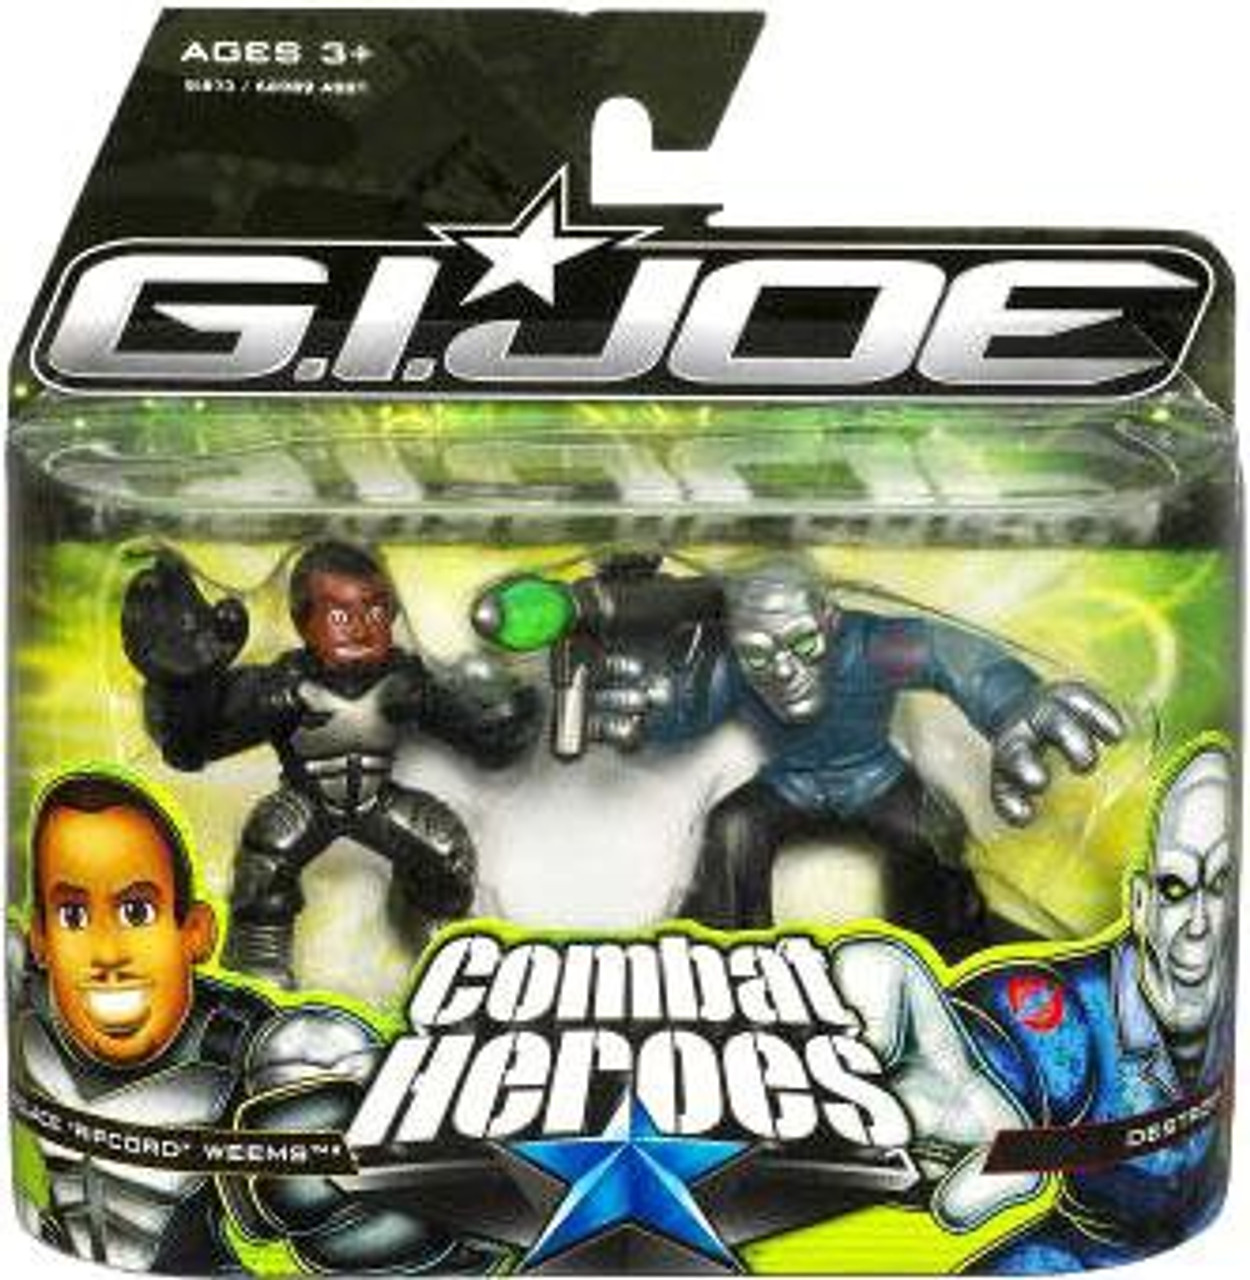 Combat hero. G.I. Joe Рипкорд фигурка. Combat Heroes Series игрушка.